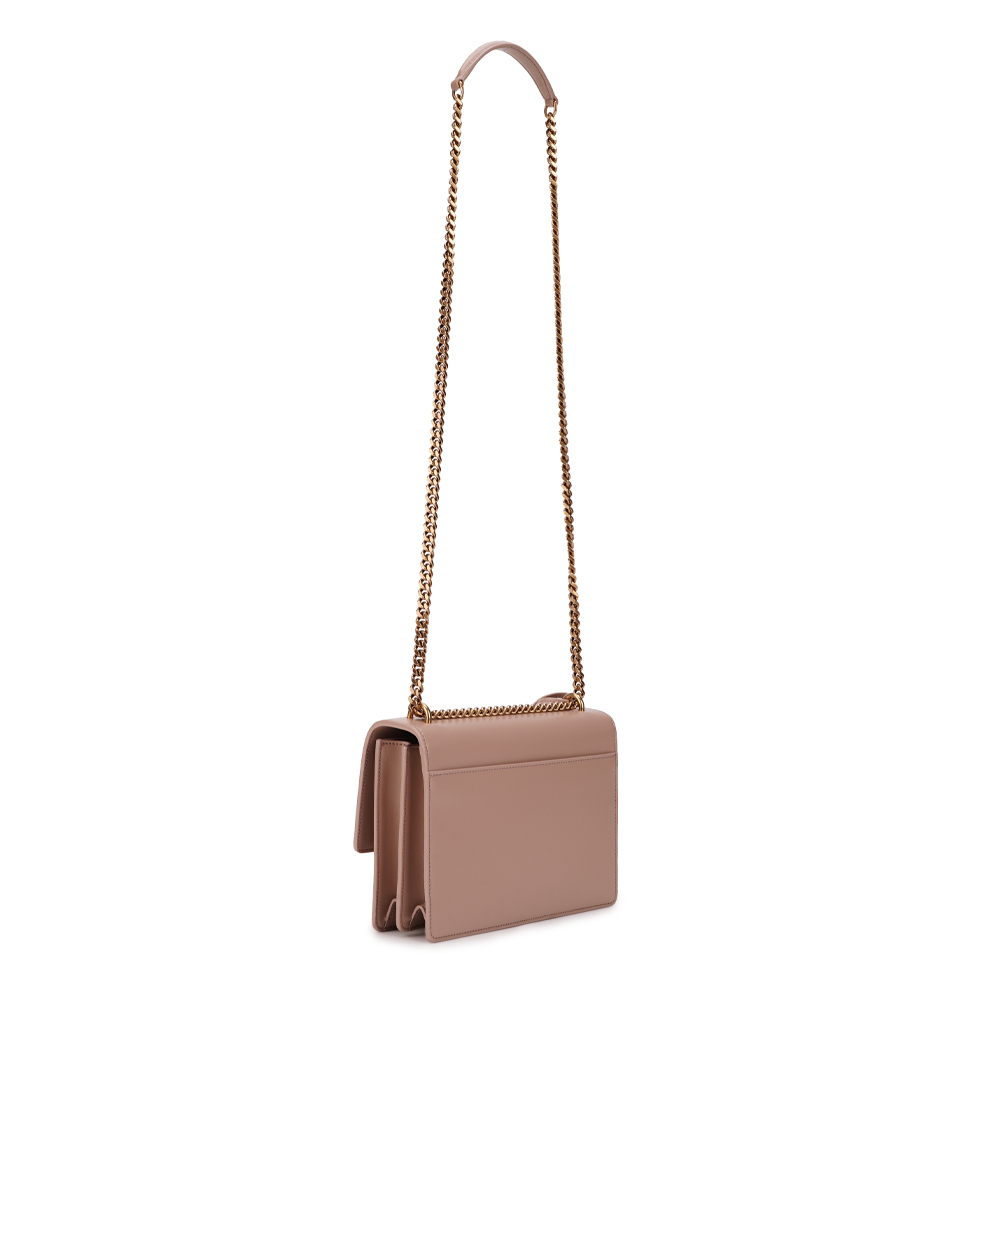 Кожаная сумка Sunset Medium Saint Laurent 442906-D420W, бежевый цвет • Купить в интернет-магазине Kameron